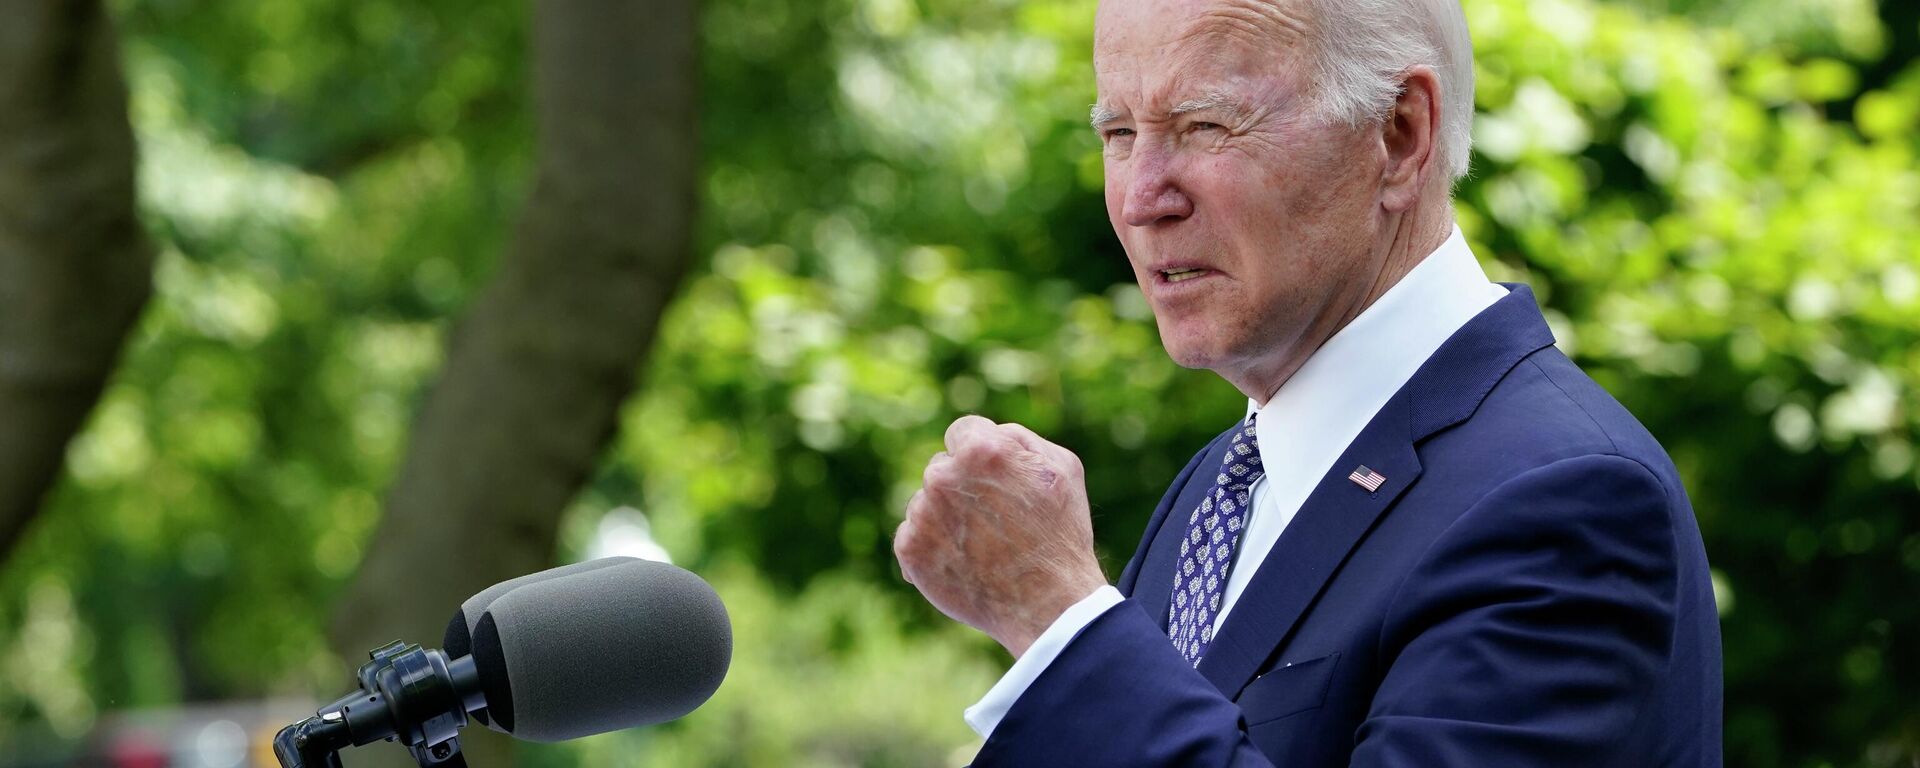 O presidente Joe Biden fala no Rose Garden da Casa Branca em Washington, durante uma recepção para celebrar o Mês do Patrimônio Ásio-Americano, Nativo do Havaí e das Ilhas do Pacífico, em 17 de maio de 2022 - Sputnik Brasil, 1920, 18.05.2022